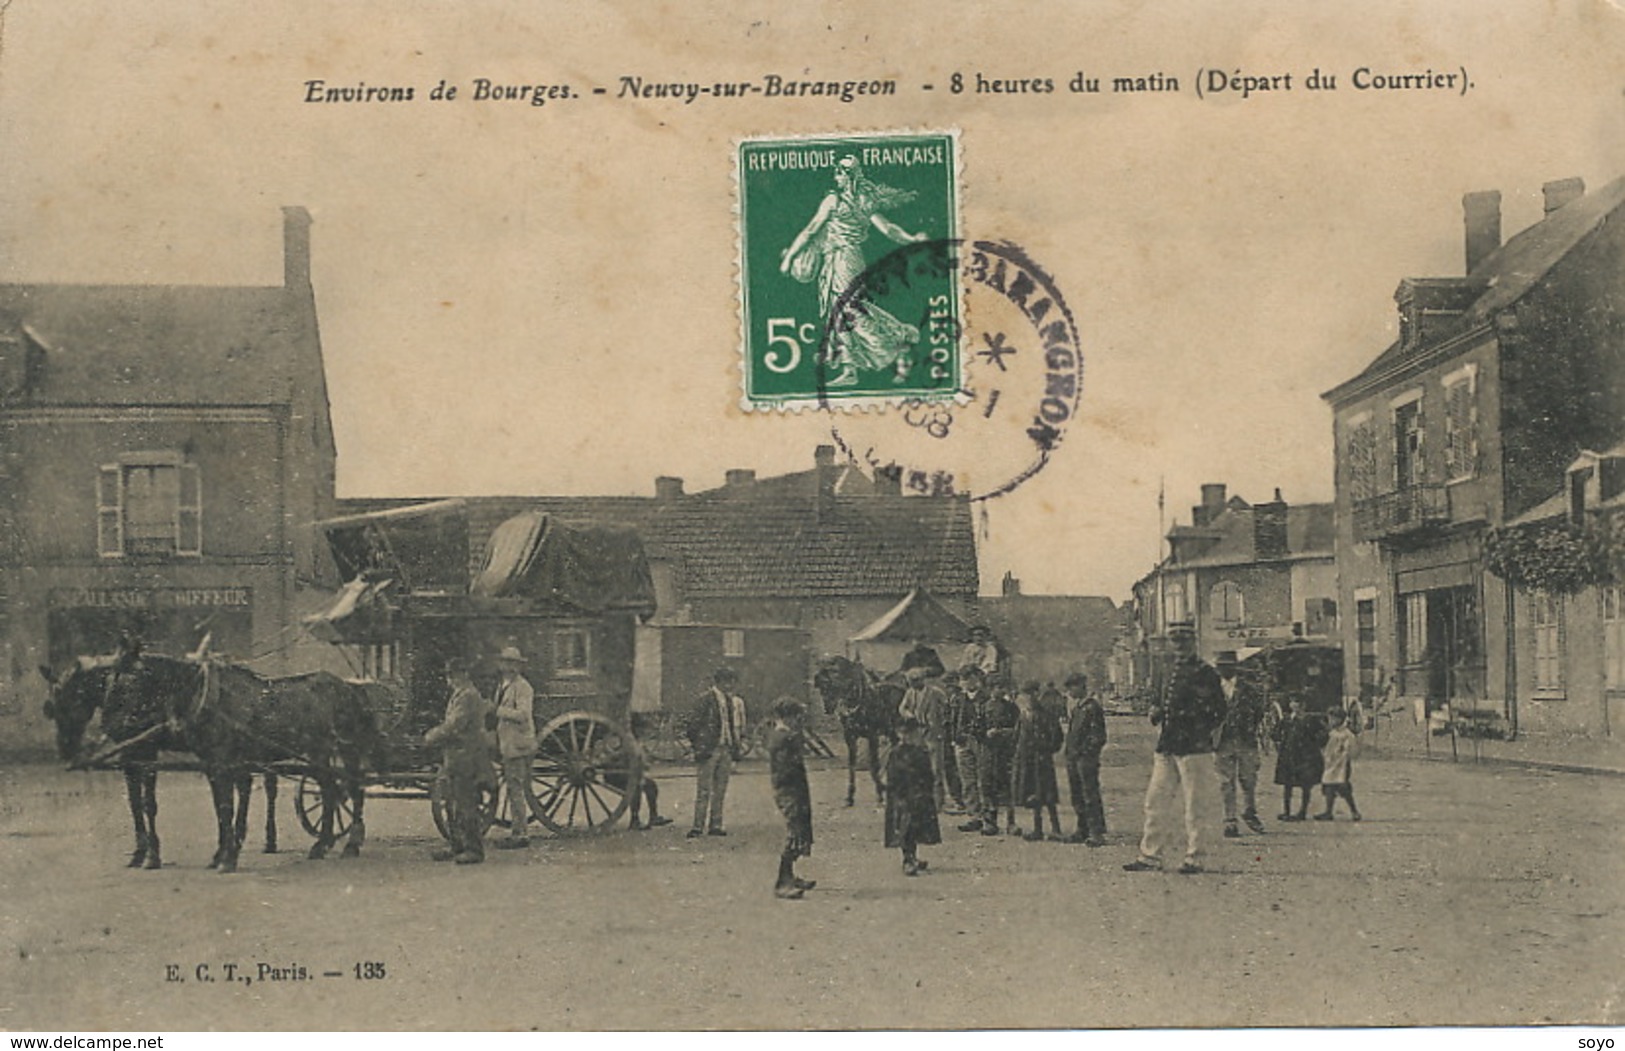 Attelage De Diligence Depart Du Courrier Neuvy Sur Barangeon. - Taxis & Cabs